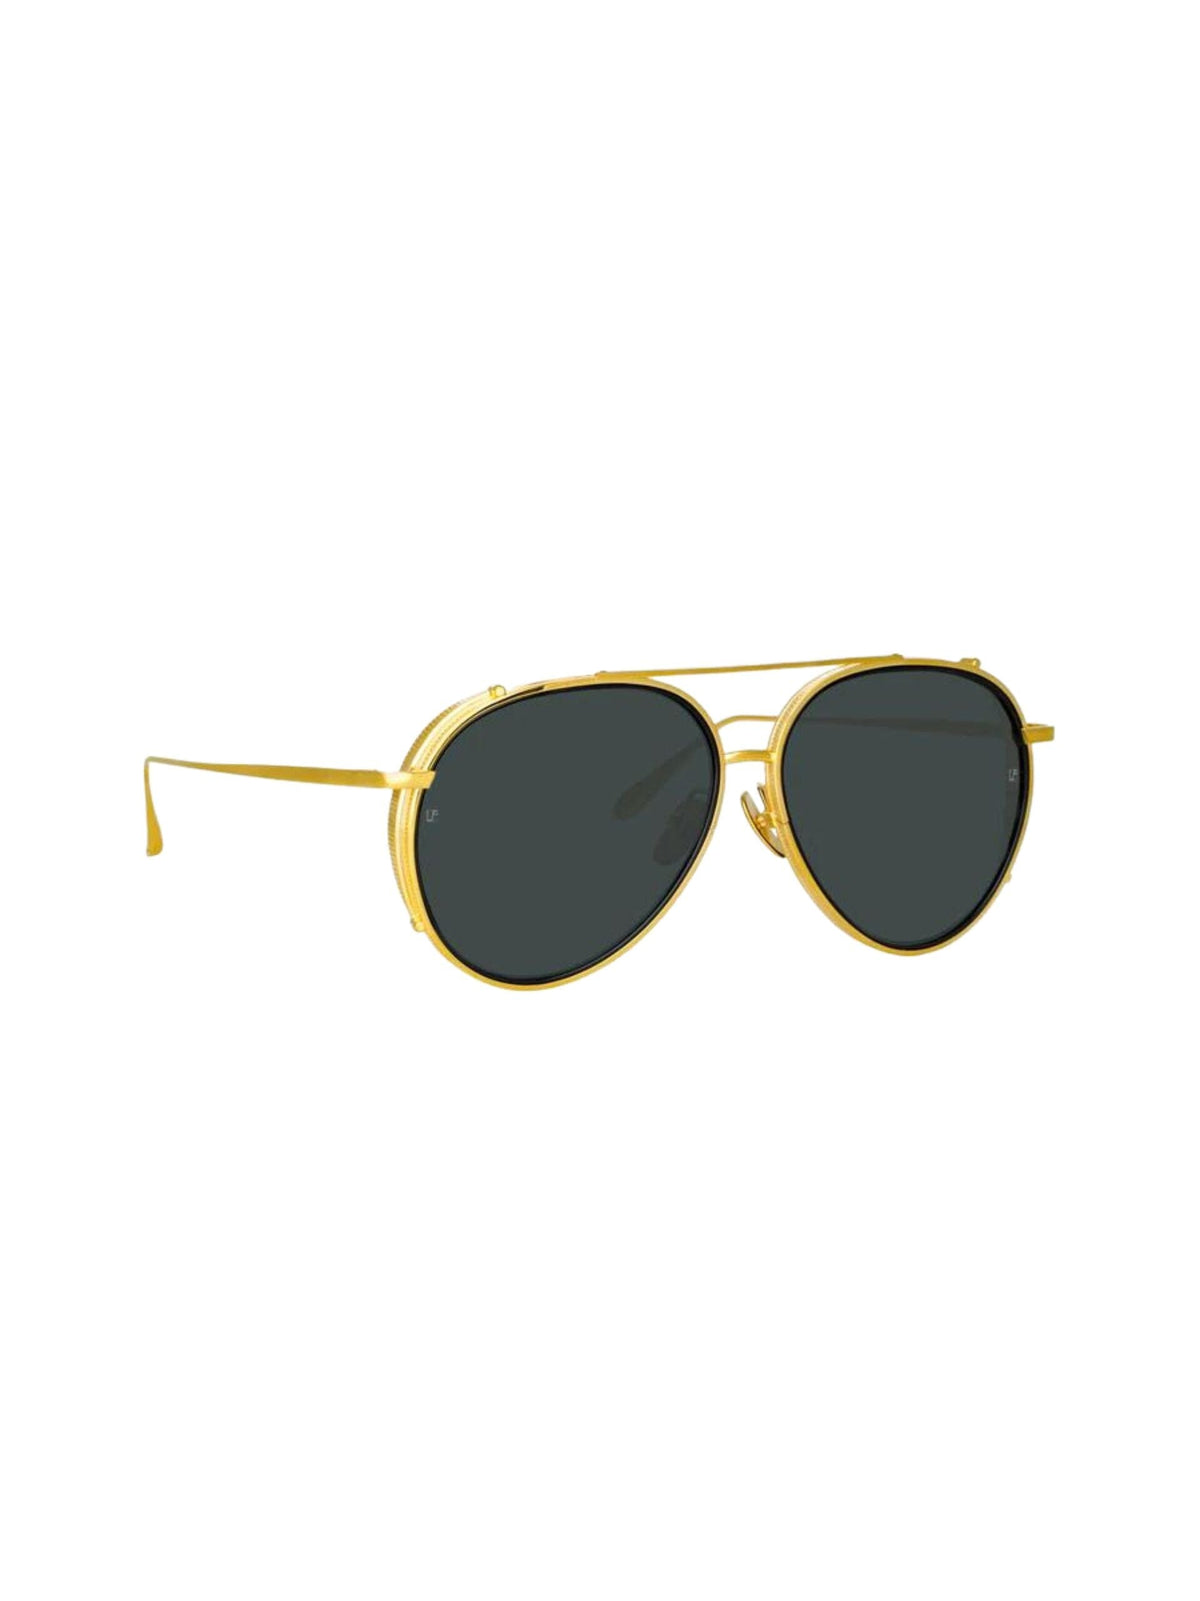 Torino Aviator Sunglasses / Yellow Gold Womens Linda Farrow 